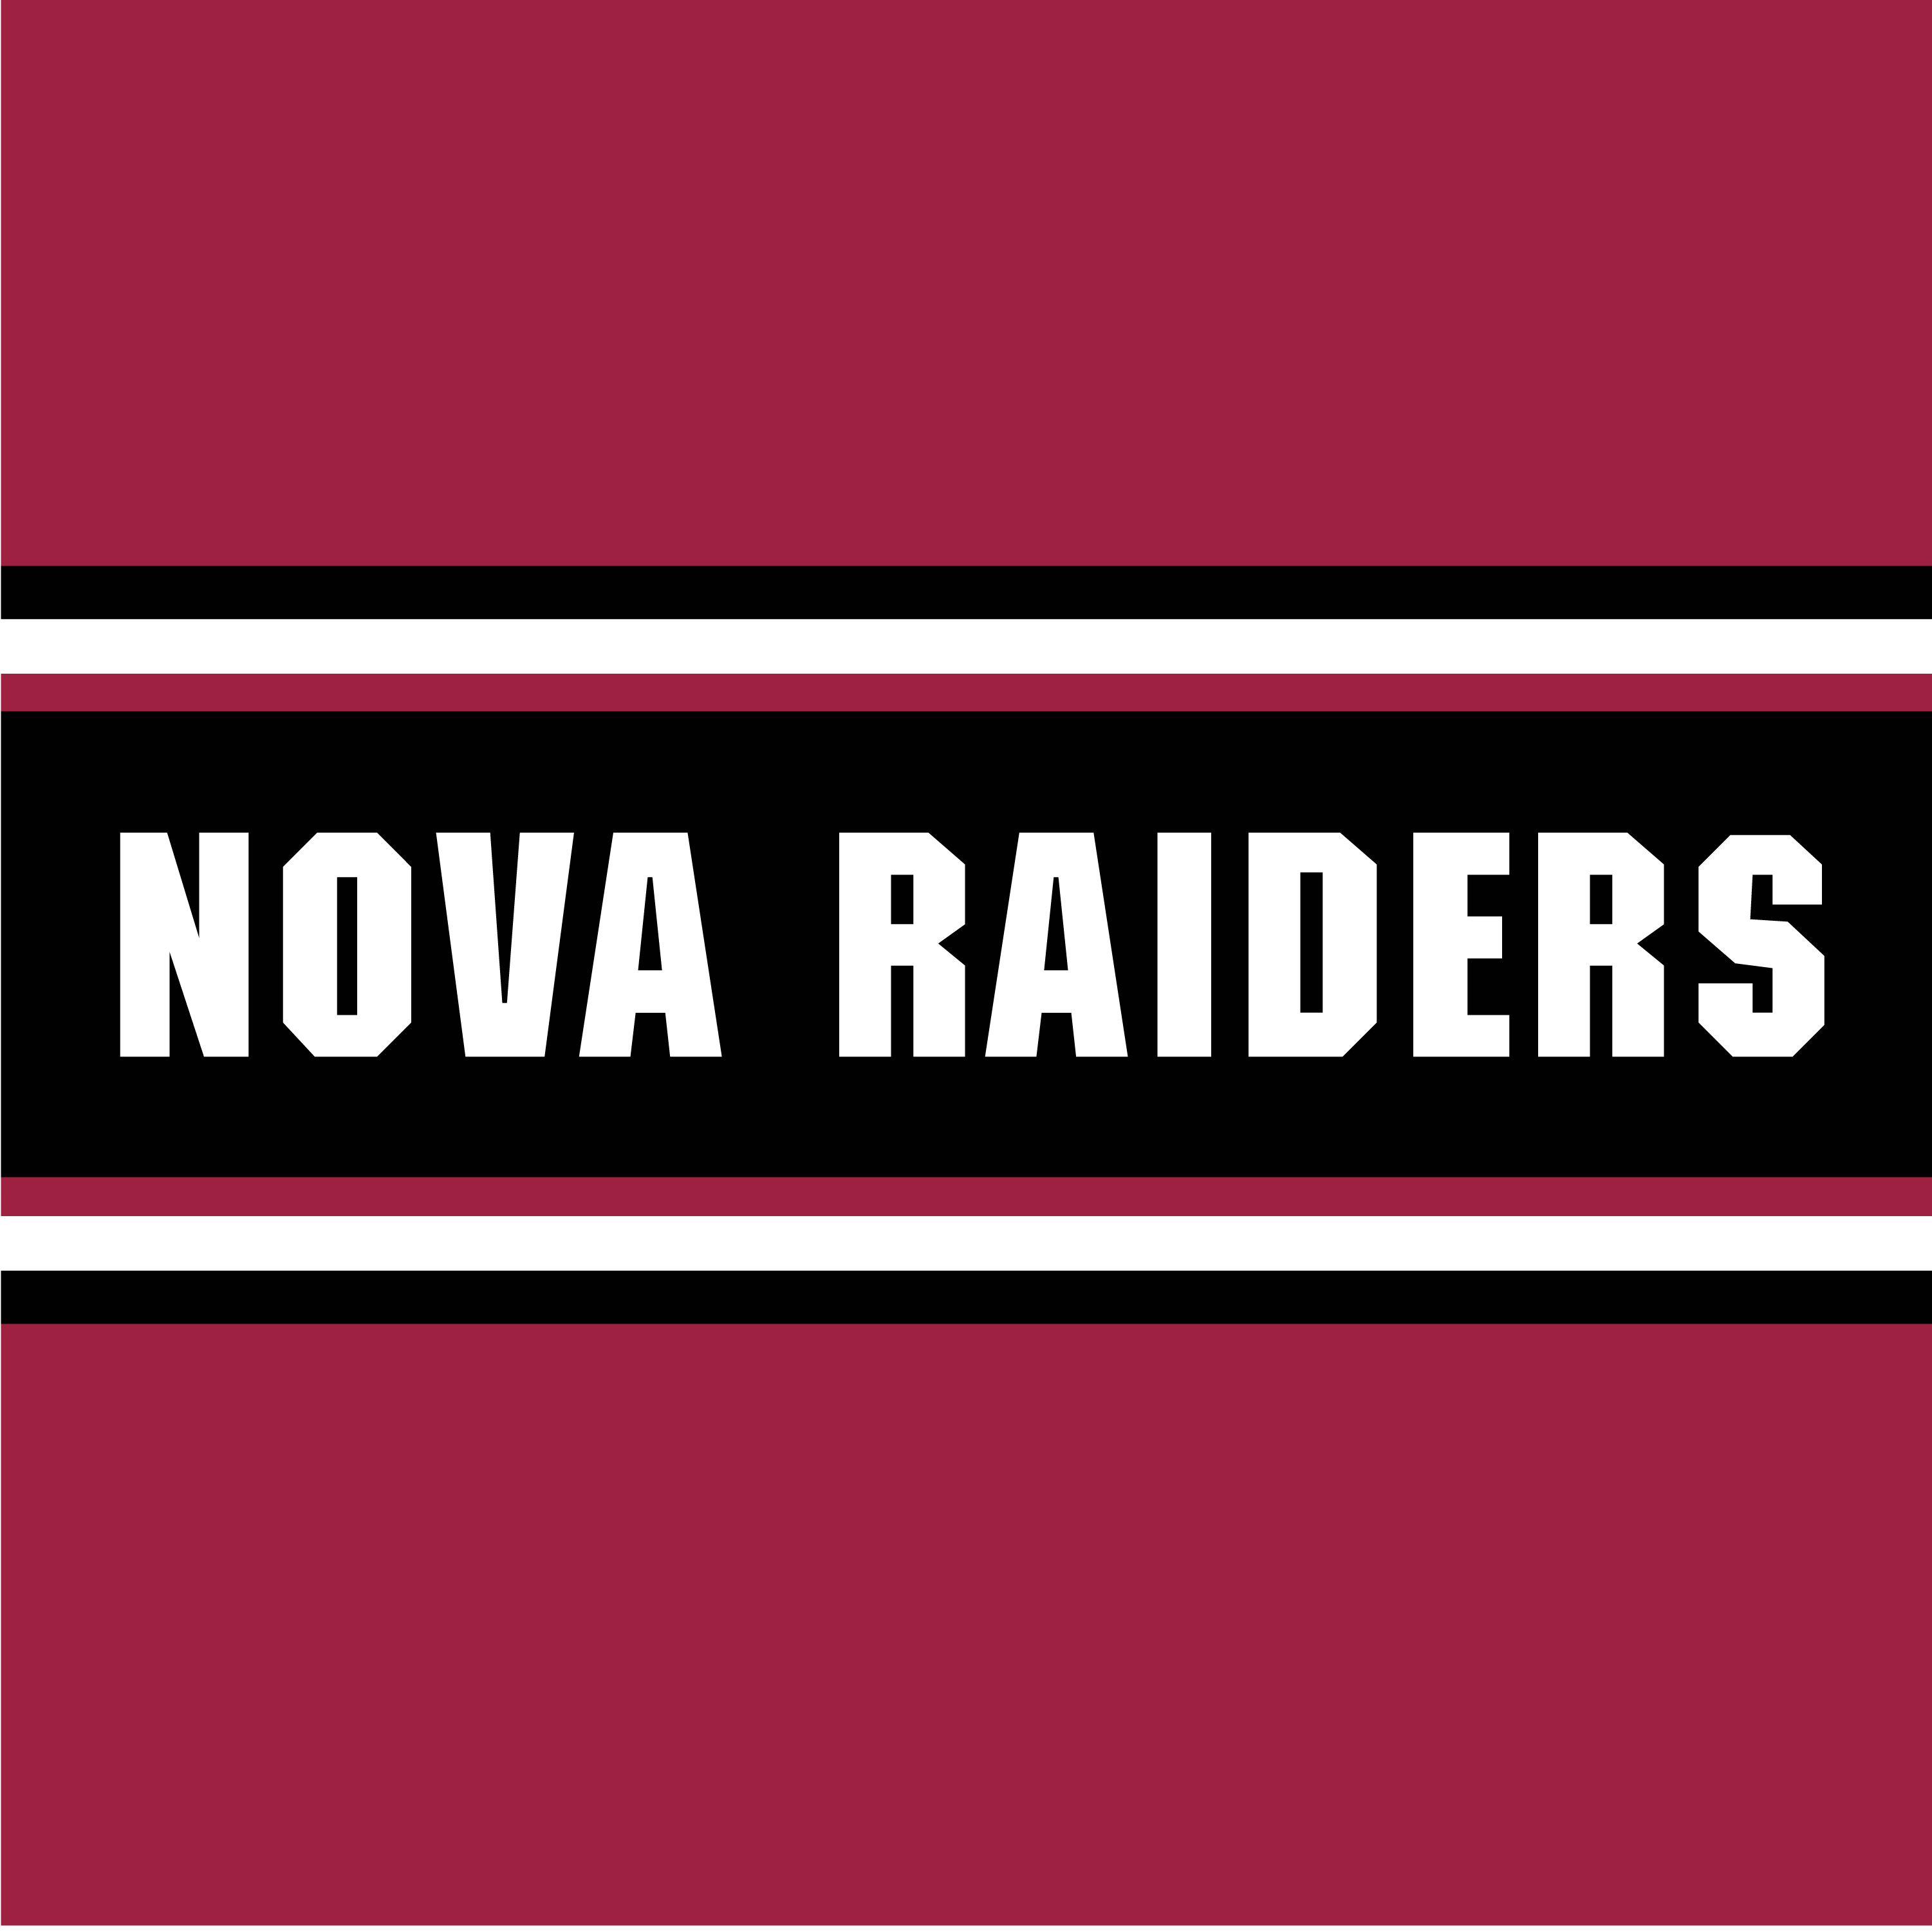 Club Image for NOVA RAIDERS